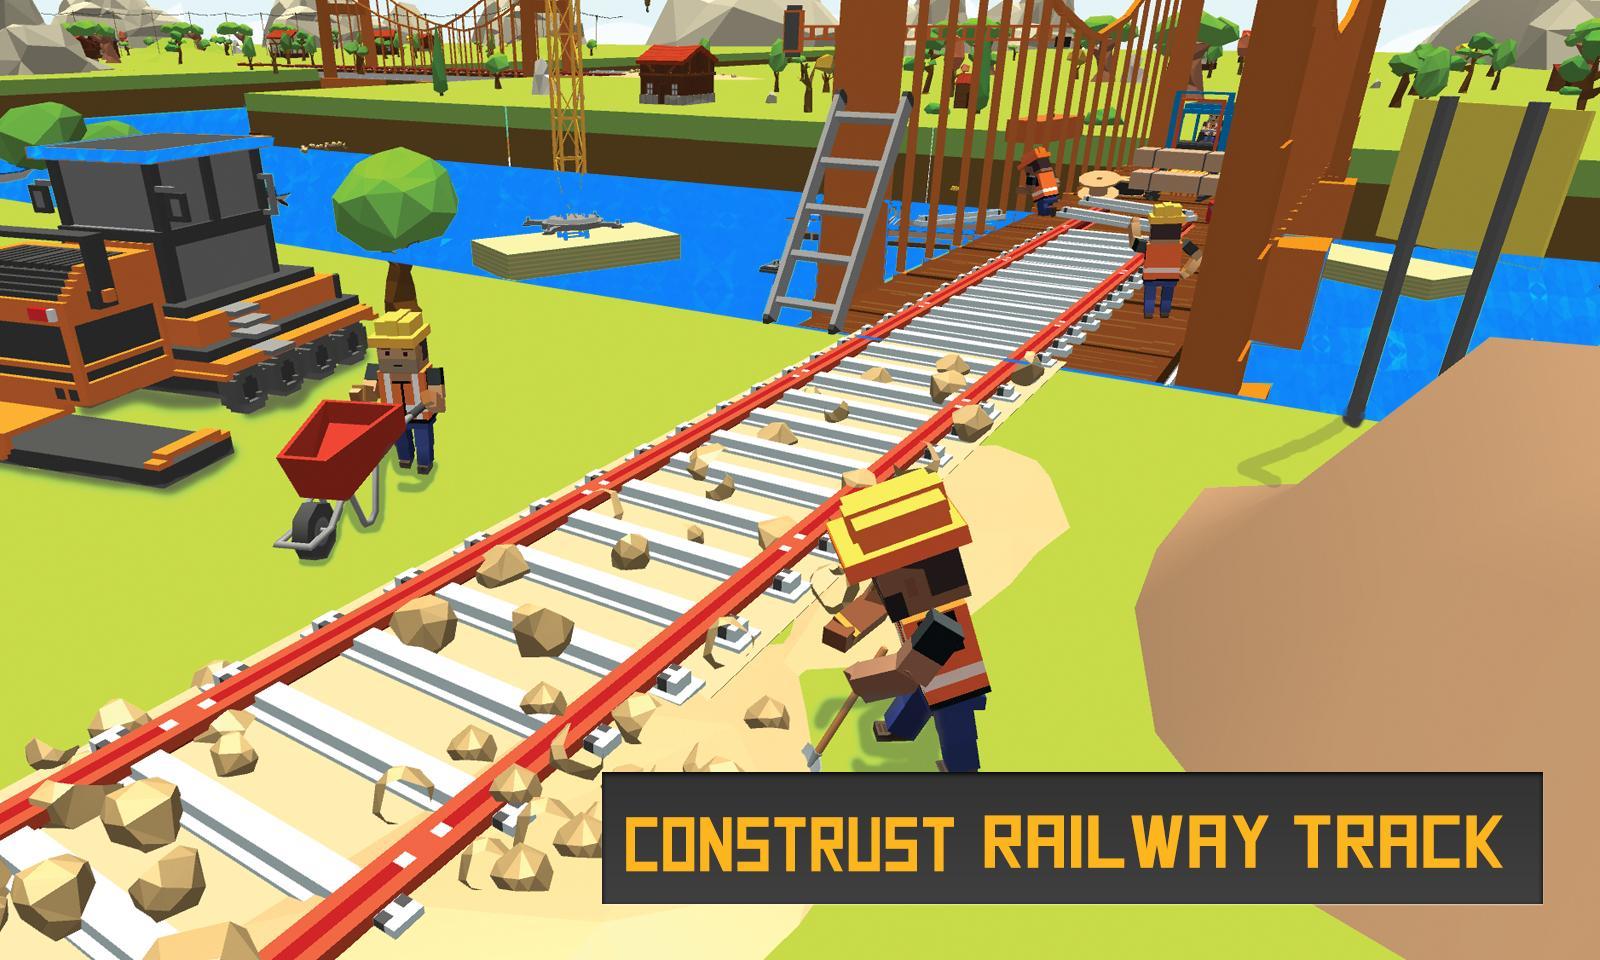 Screenshot 1 of Game Kereta Api Konstruksi Jembatan Sungai 2017 1.1